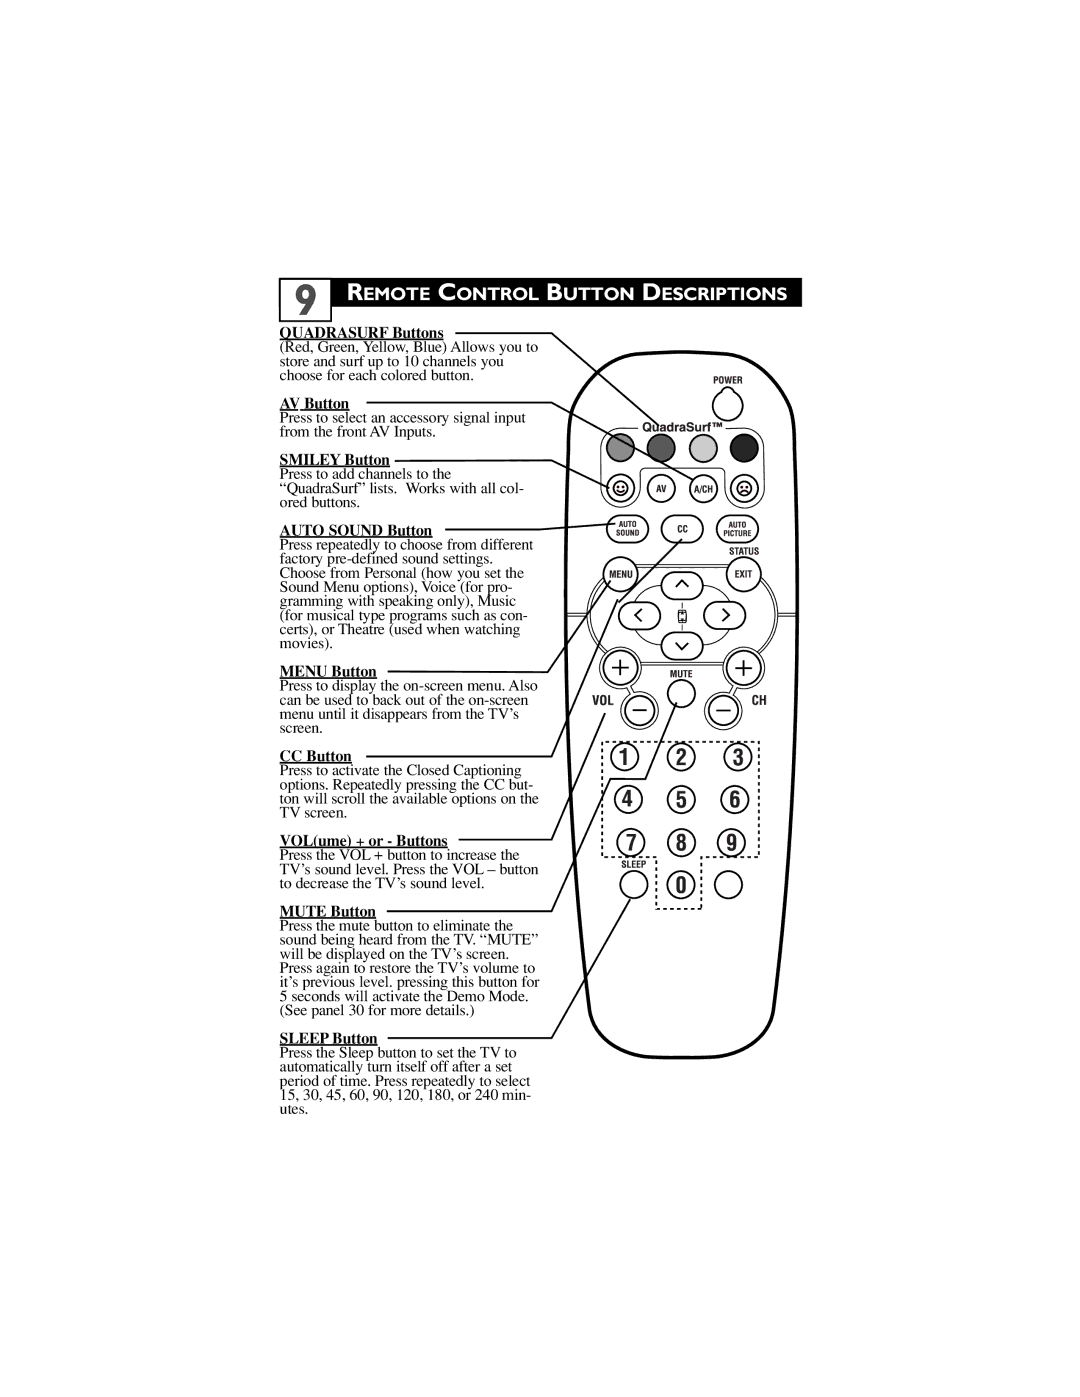 Philips 27PT6441/37, 27PT6442/37, 27PT5441/37, 24ST2200/27, 32PT5441/37 user manual Remote Control Button Descriptions 